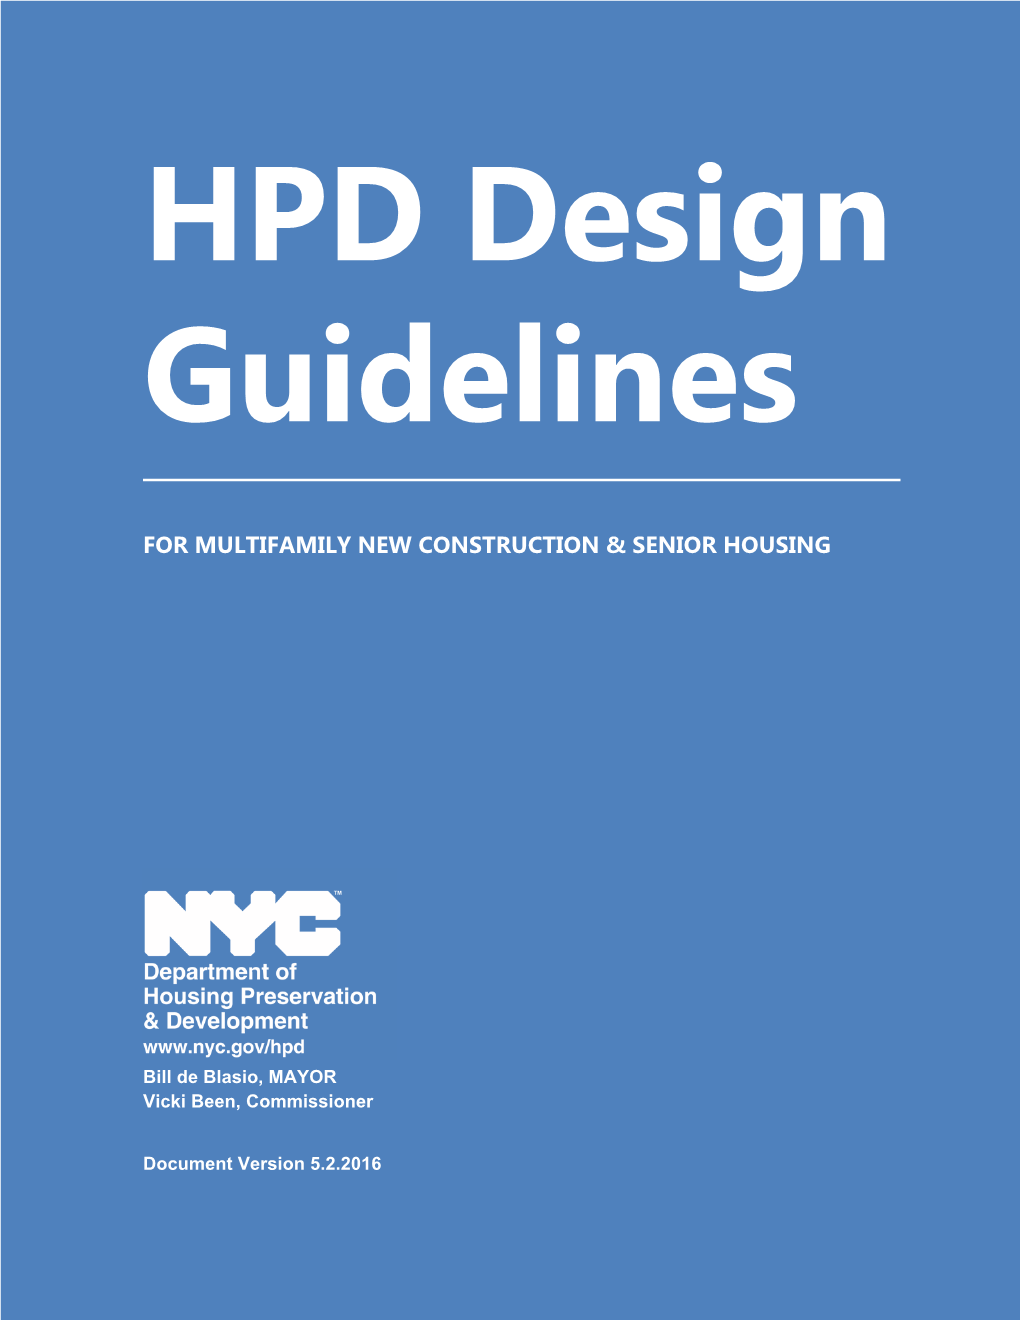 HPD Design Guidelines